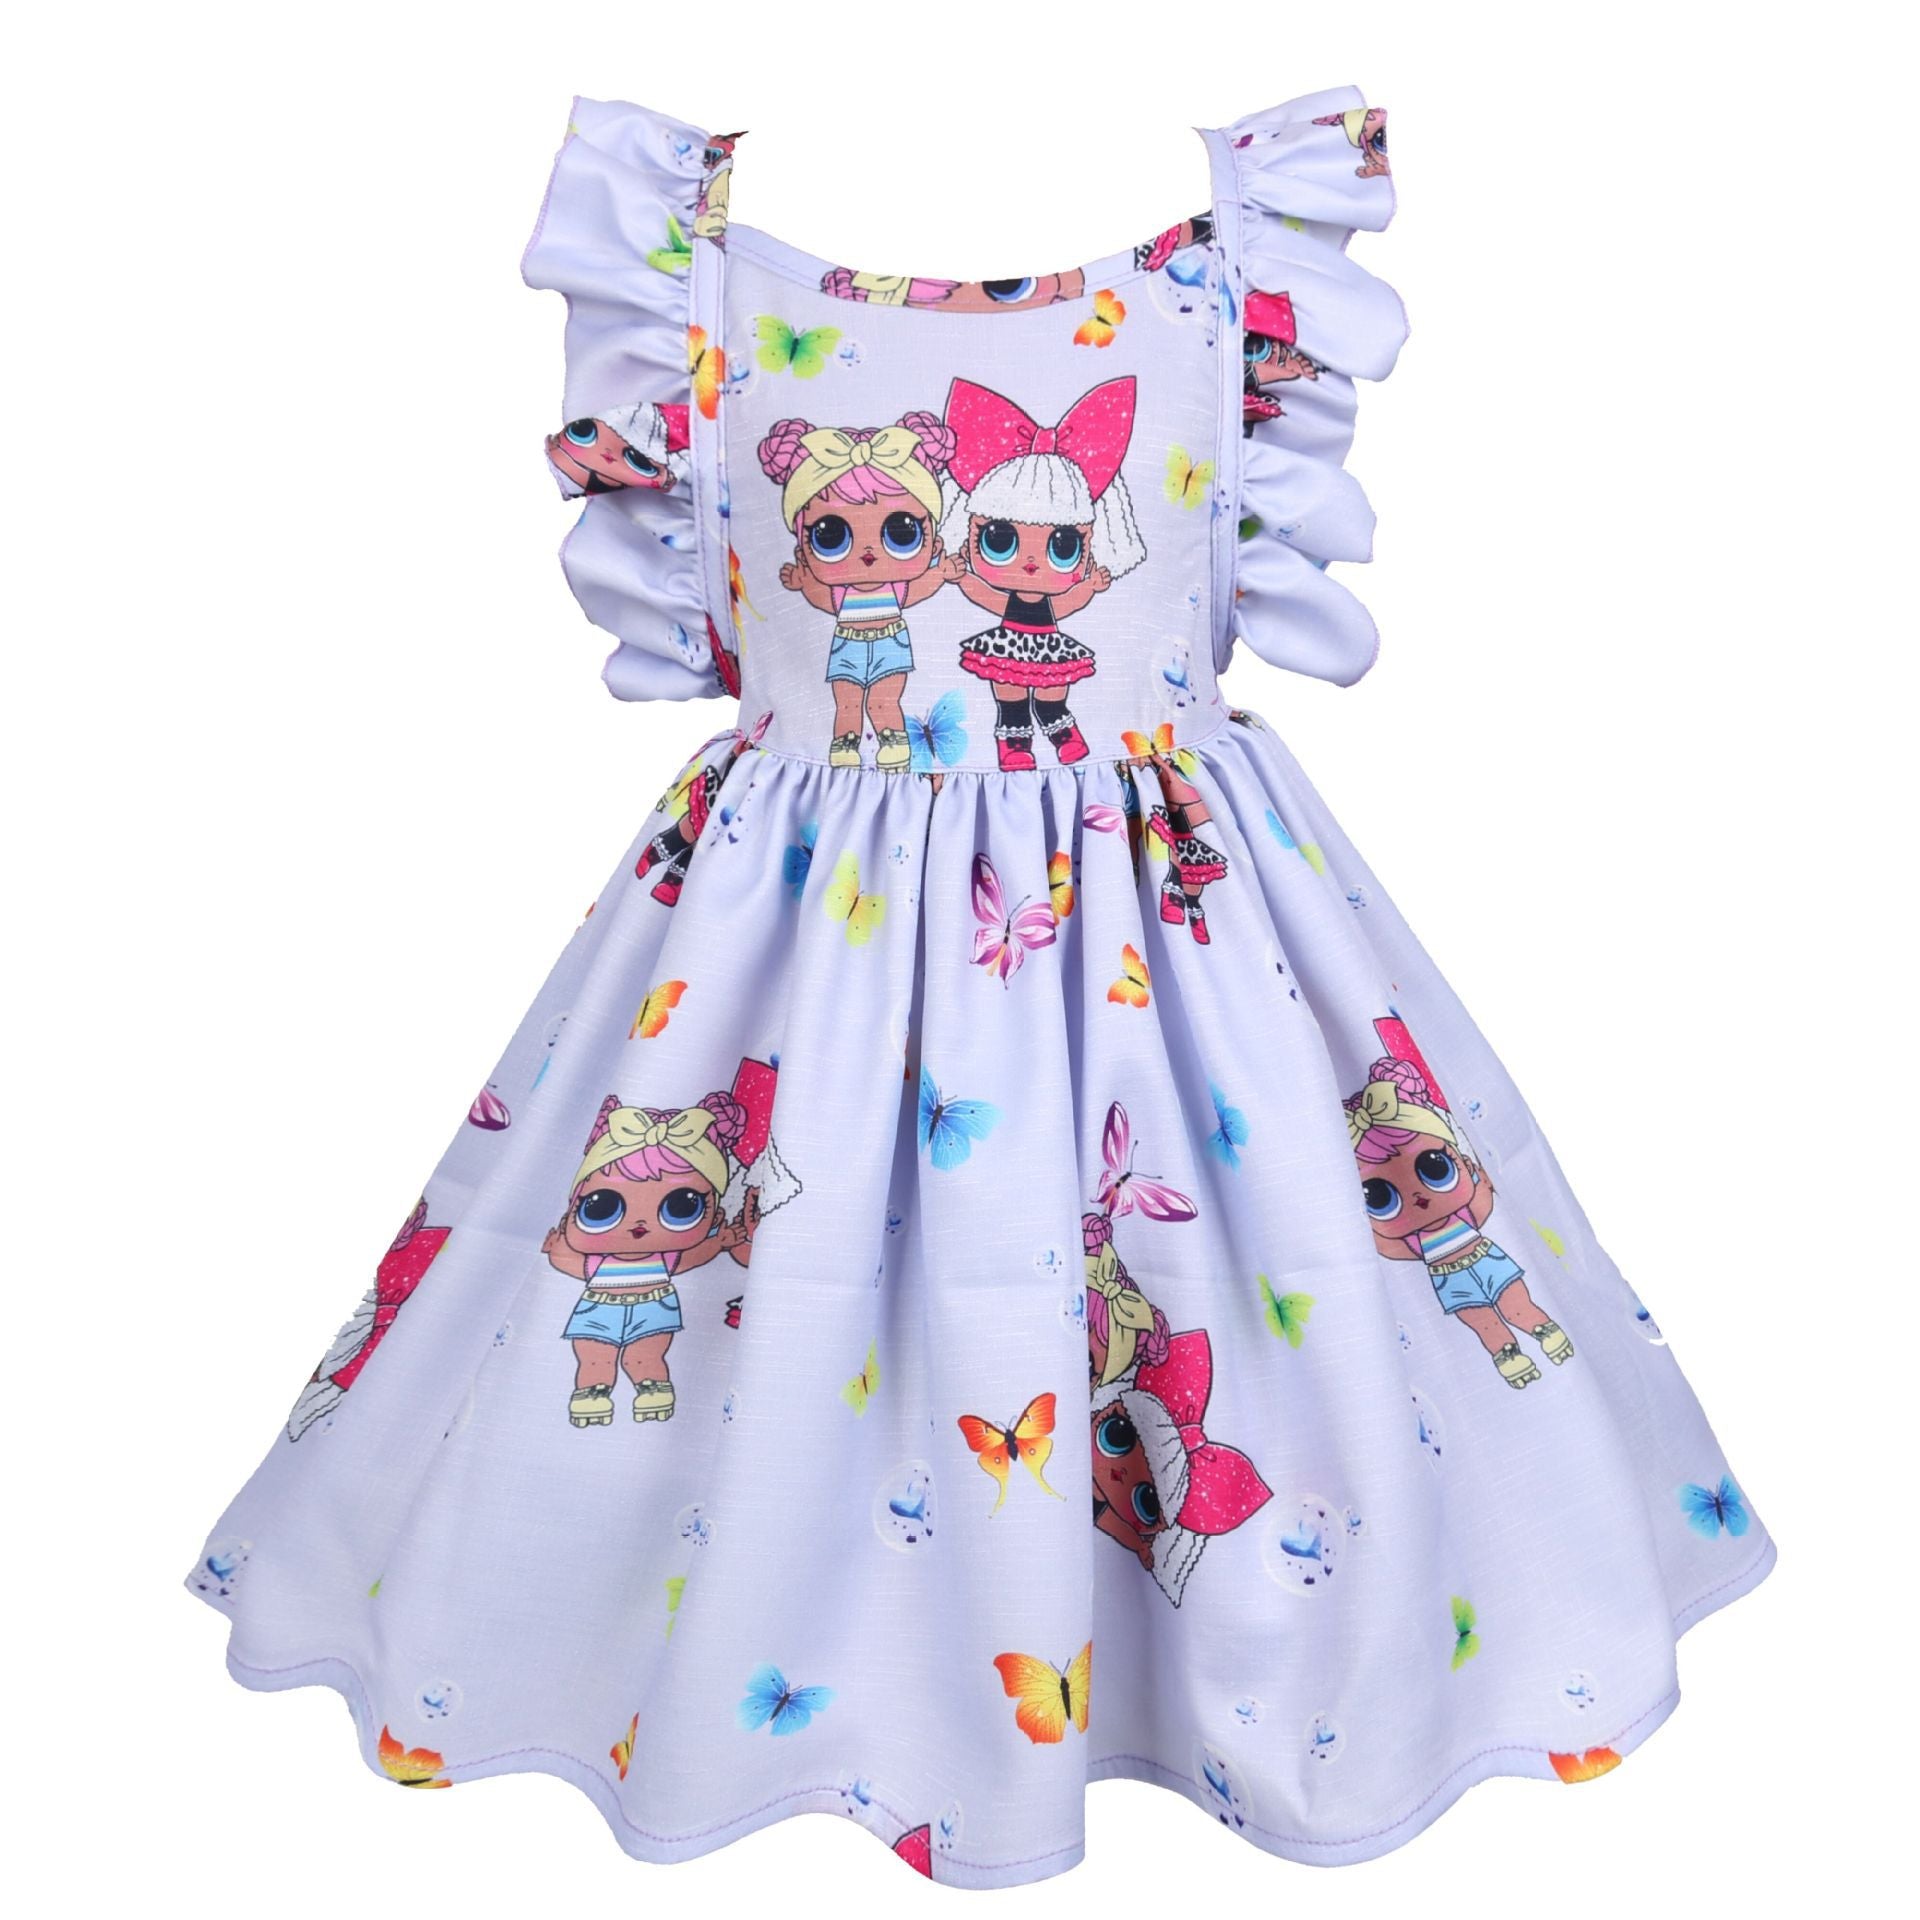 Children's Skirts, Small And Medium Girls' Dress